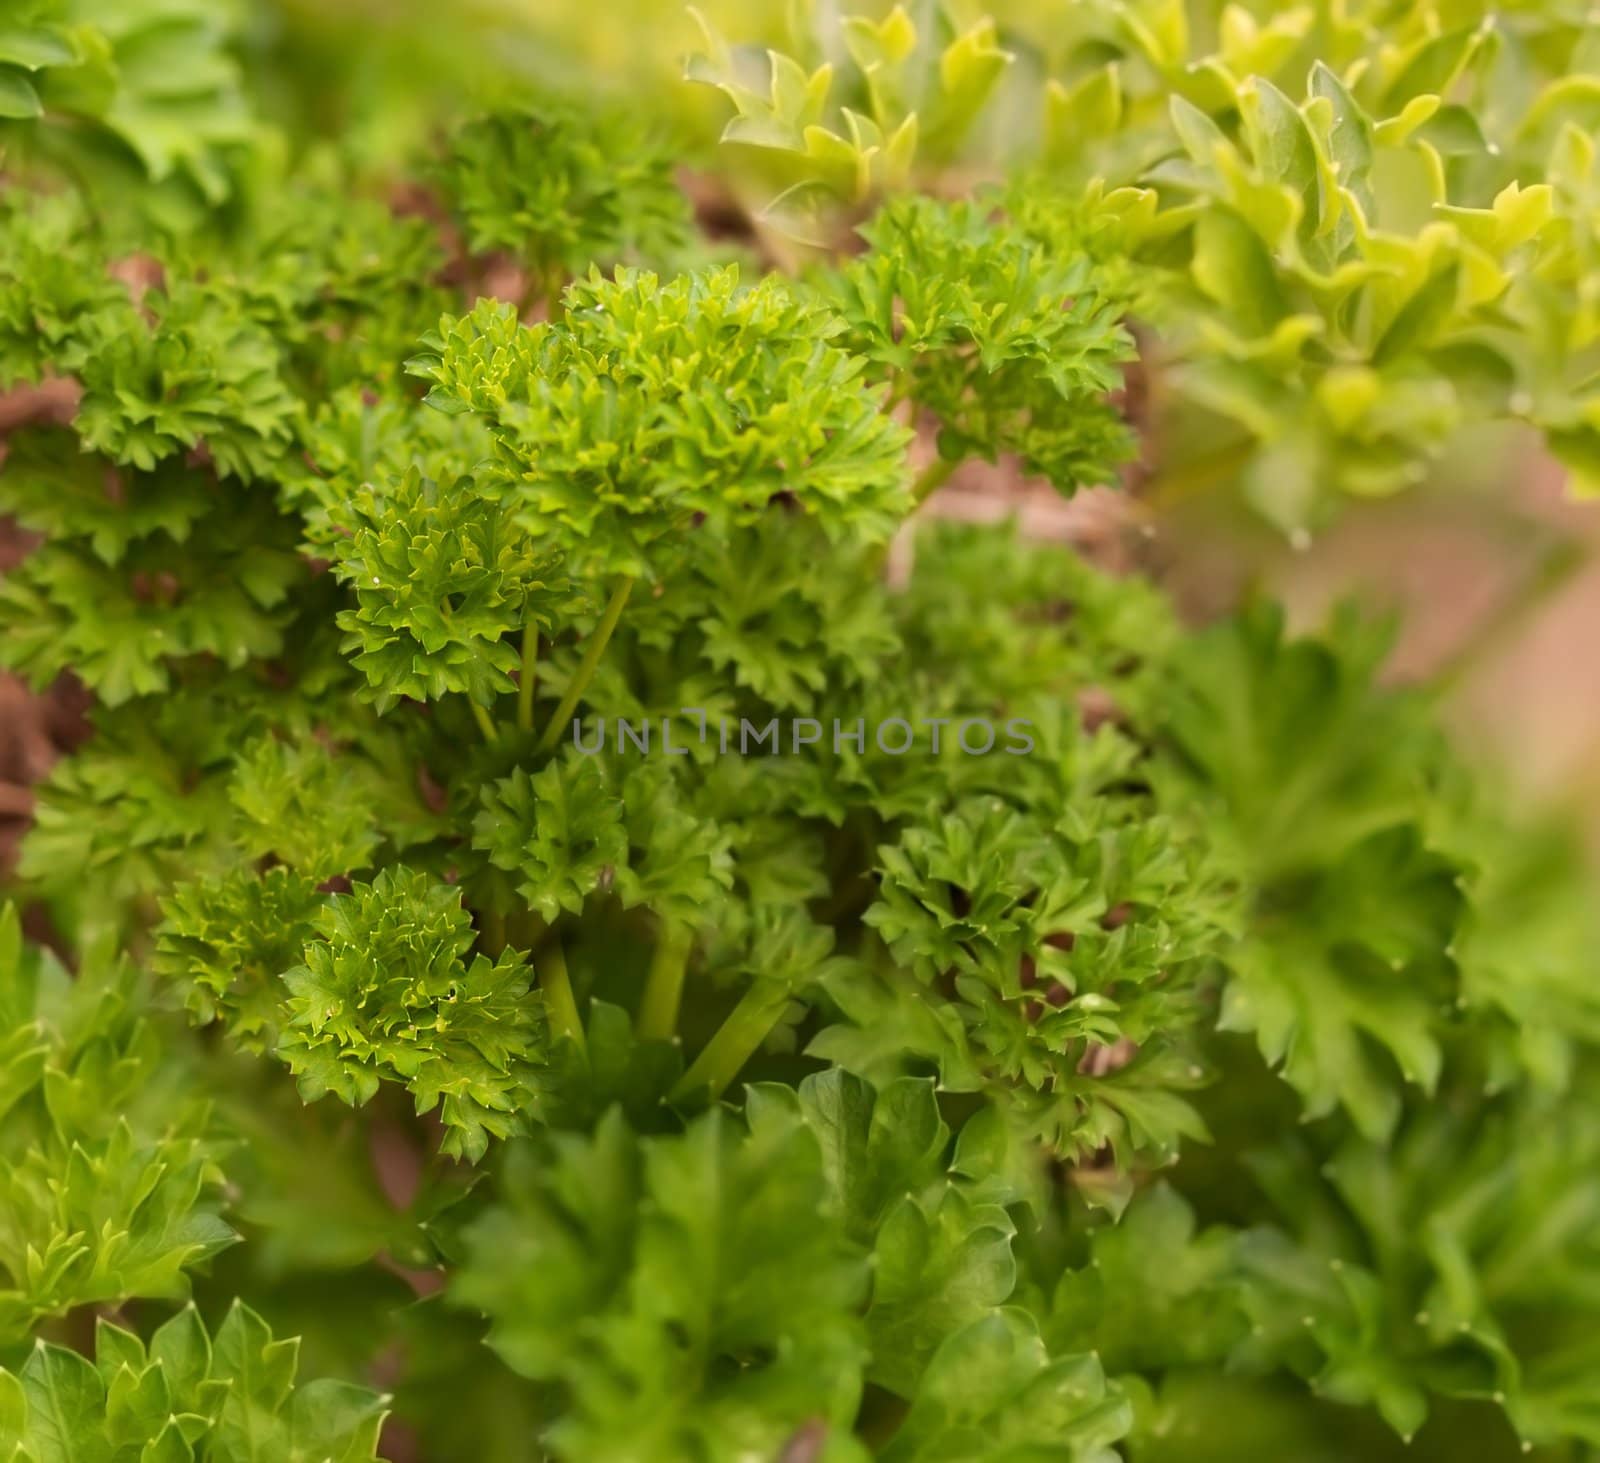 Healthy lifestyle organic herb gardening curly leaf parsley by sherj